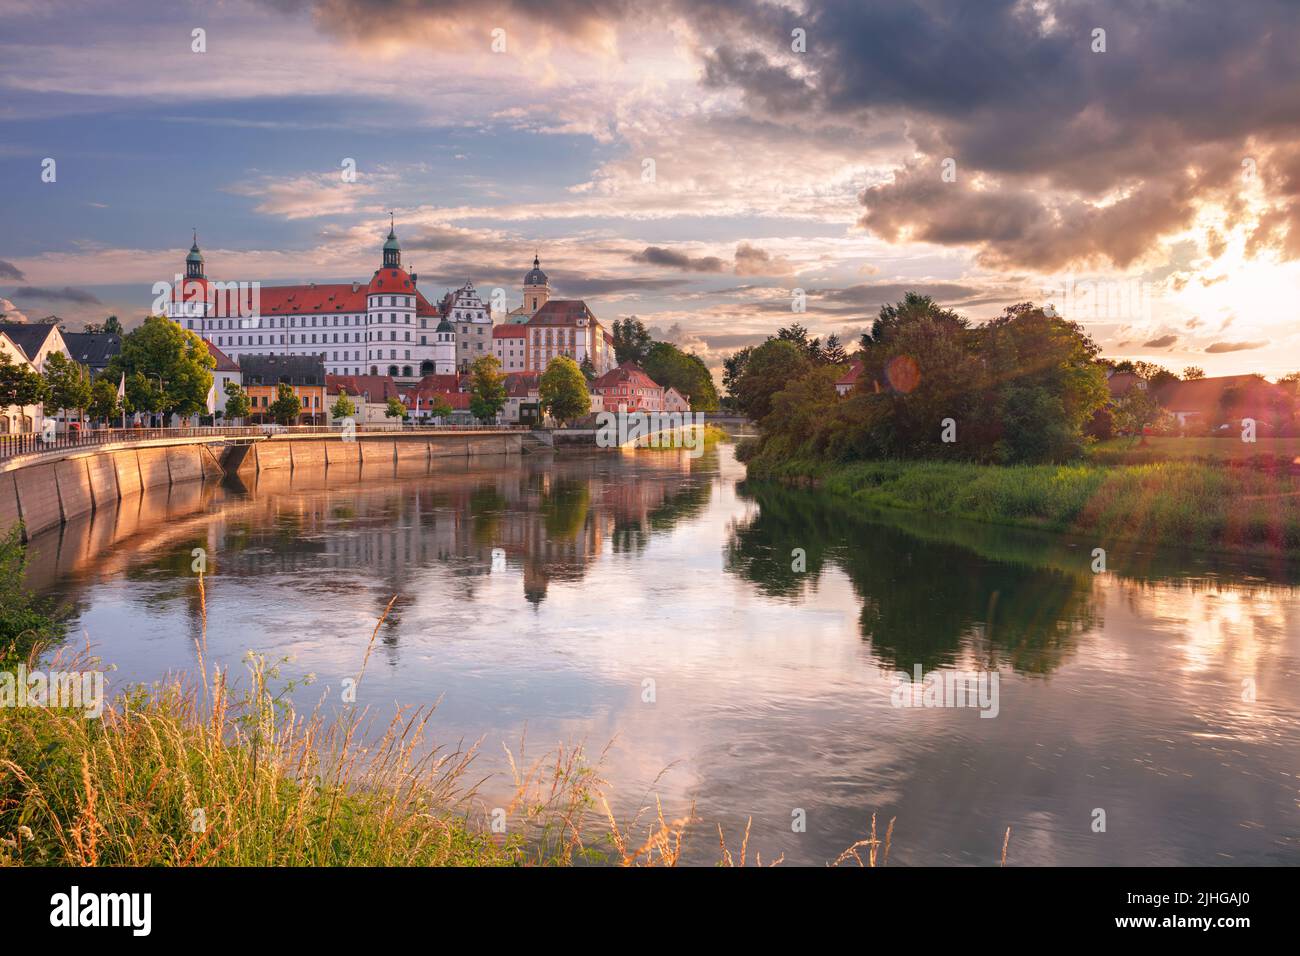 Neuburg an der Donau, Germany. Cityscape image of Neuburg an der Donau, Germany at summer sunset. Stock Photo